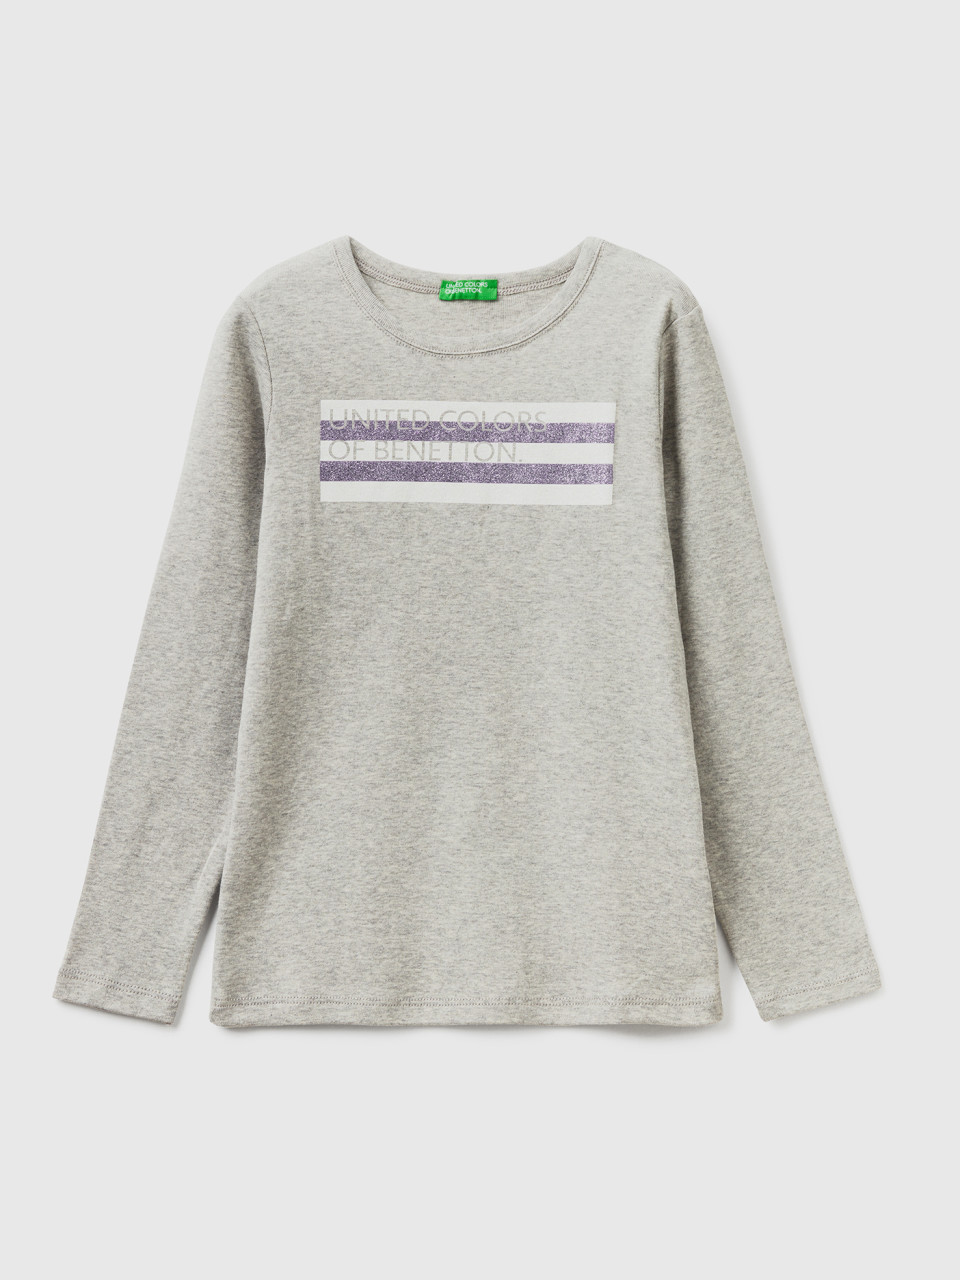 Benetton, Long Sleeve T-shirt With Glitter Print, Light Gray, Kids